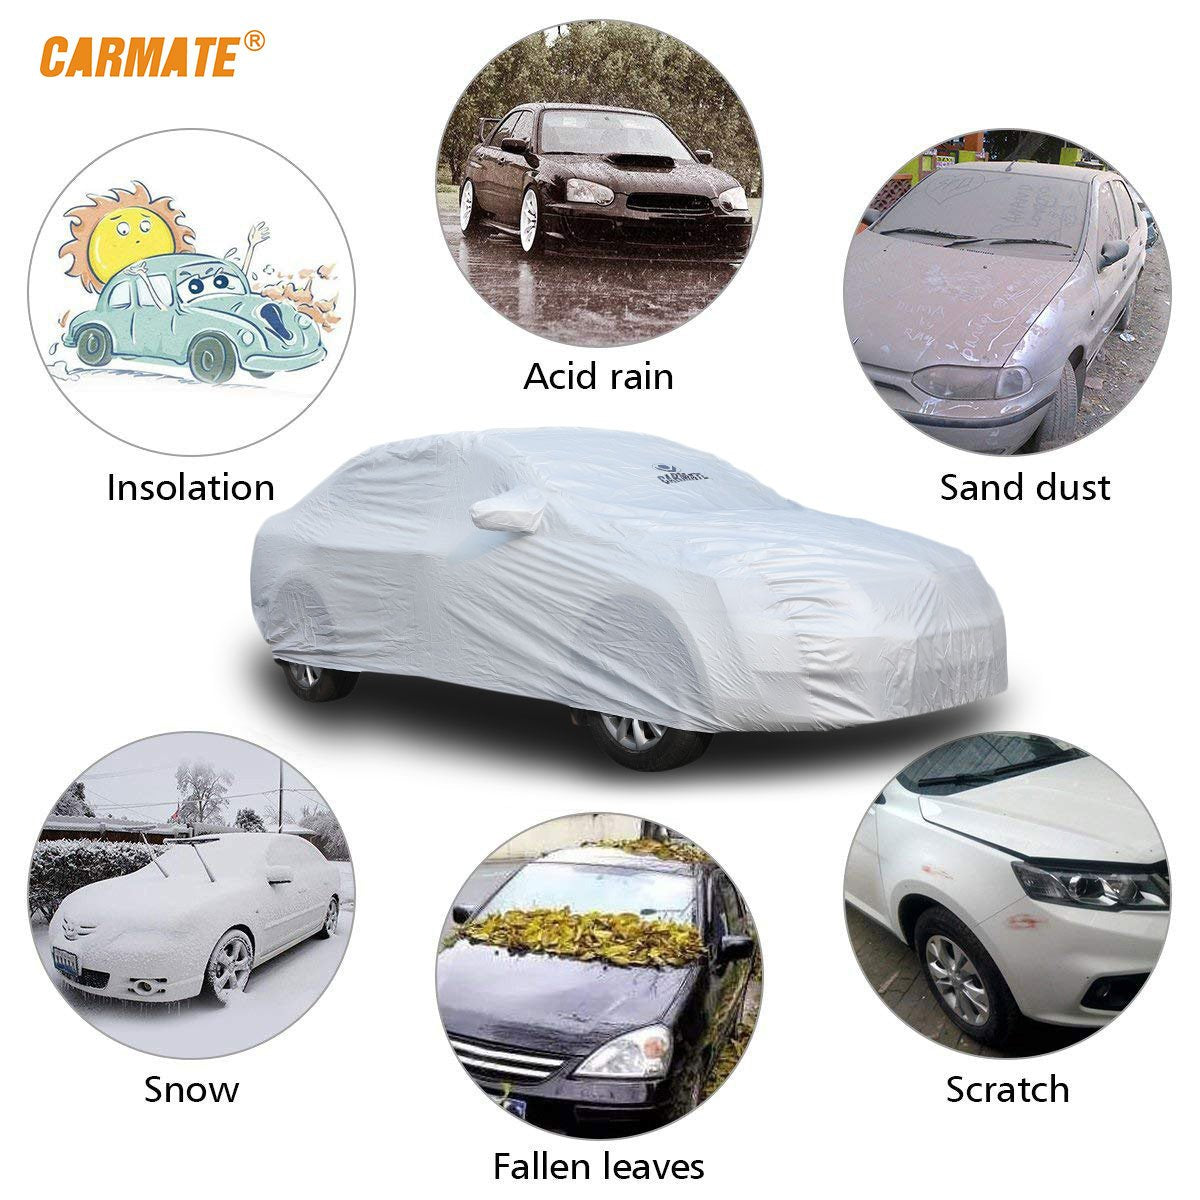 Carmate Premium Car Body Cover Silver Matty (Silver) for  Maruti - S Cross - CARMATE®